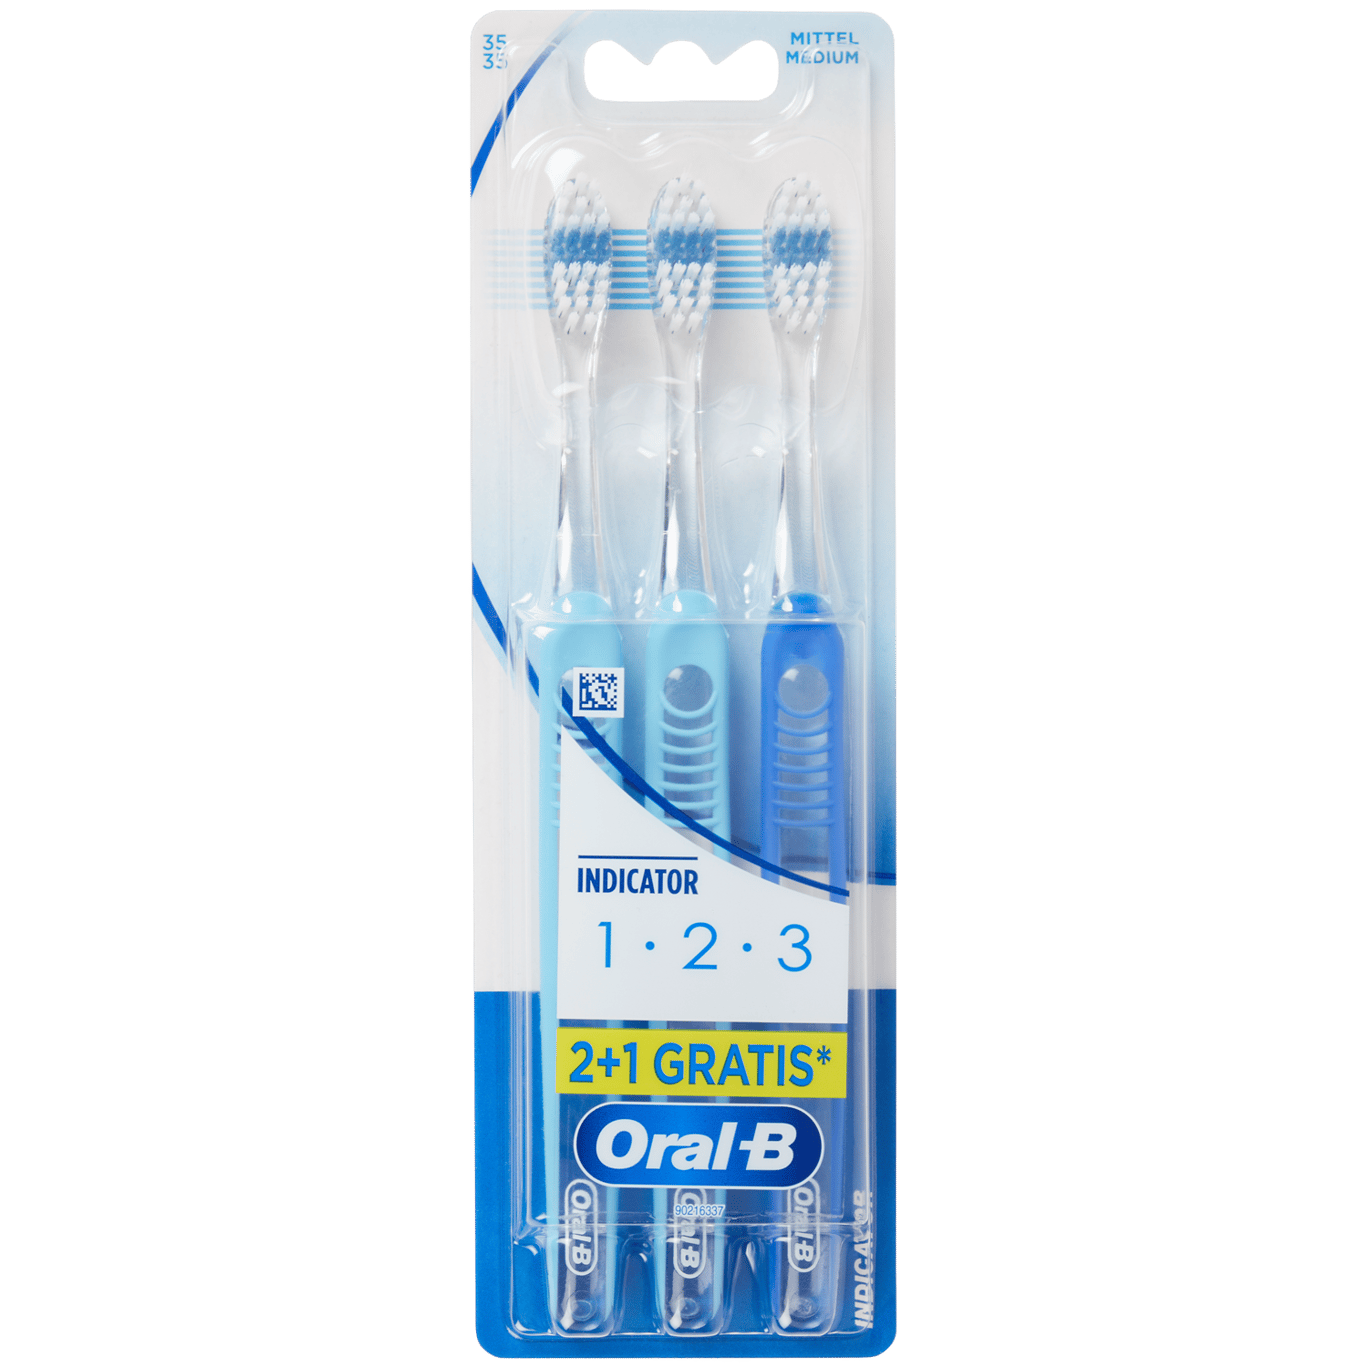 Cepillos de dientes Oral-B Indicador 1-2-3